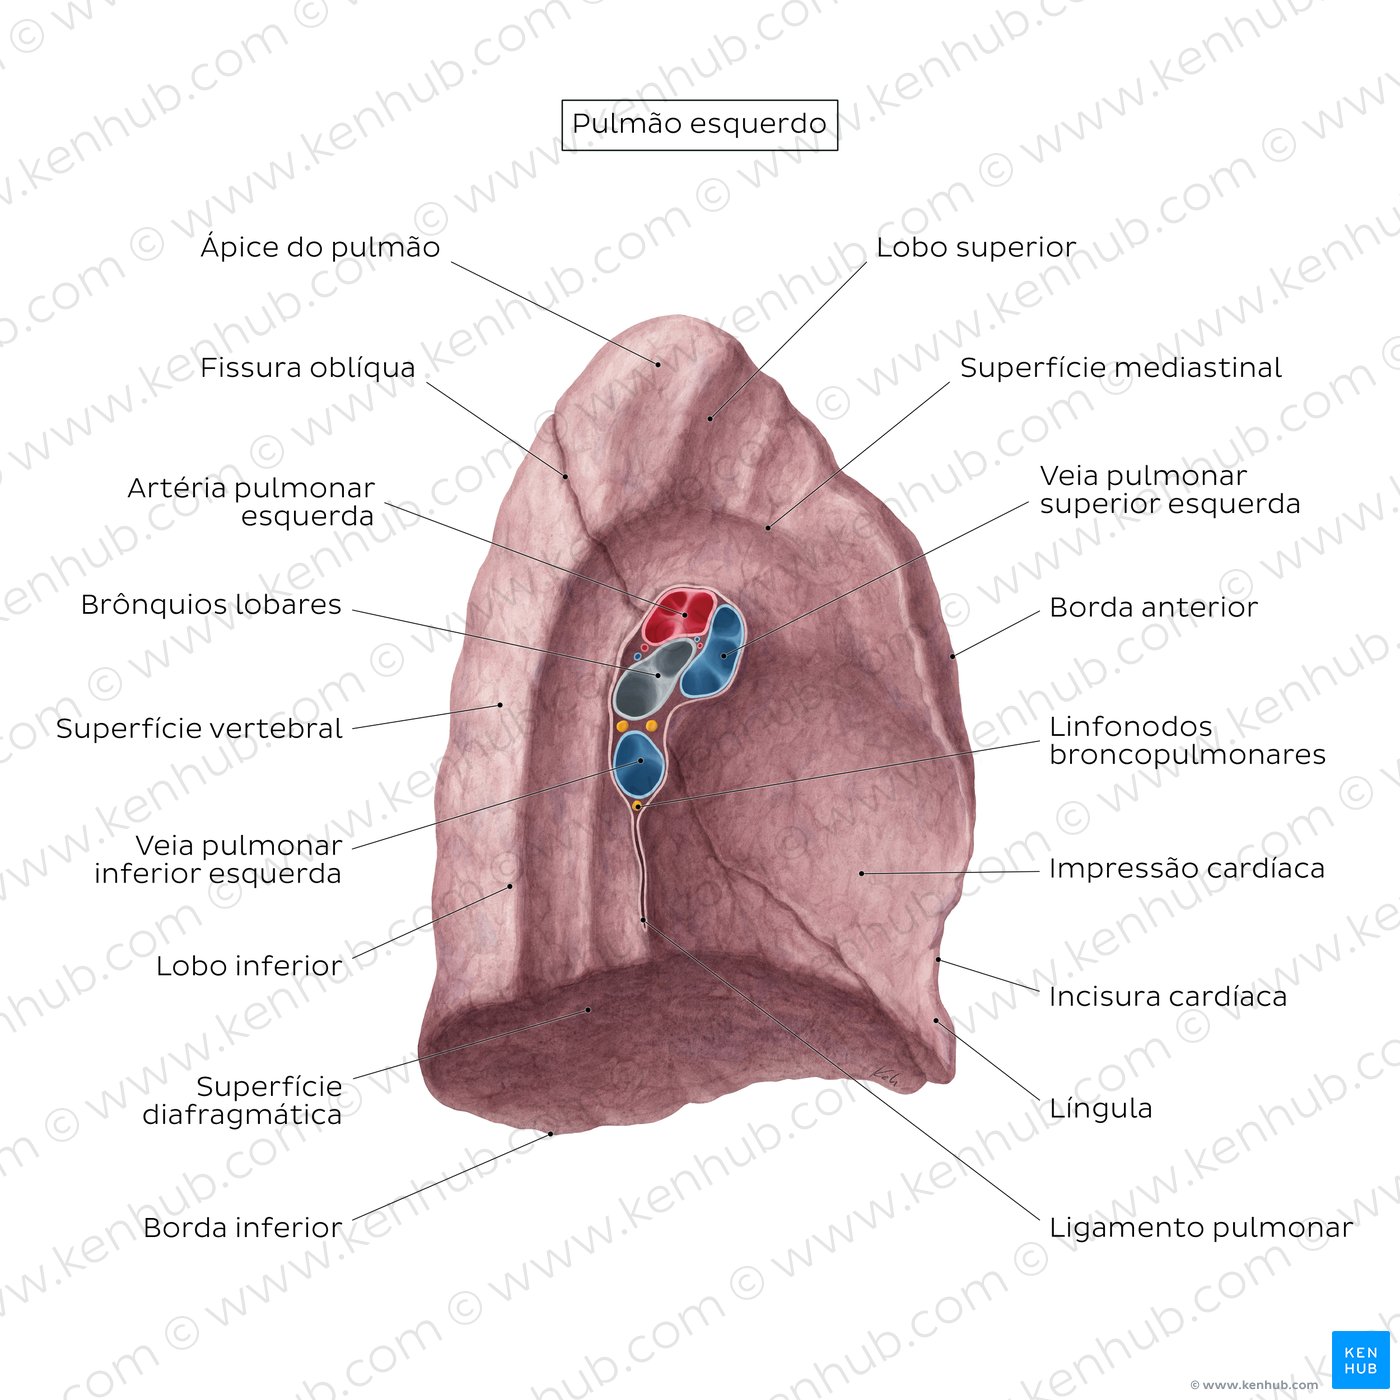 Visão geral da superfície medial do pulmão - vista medial